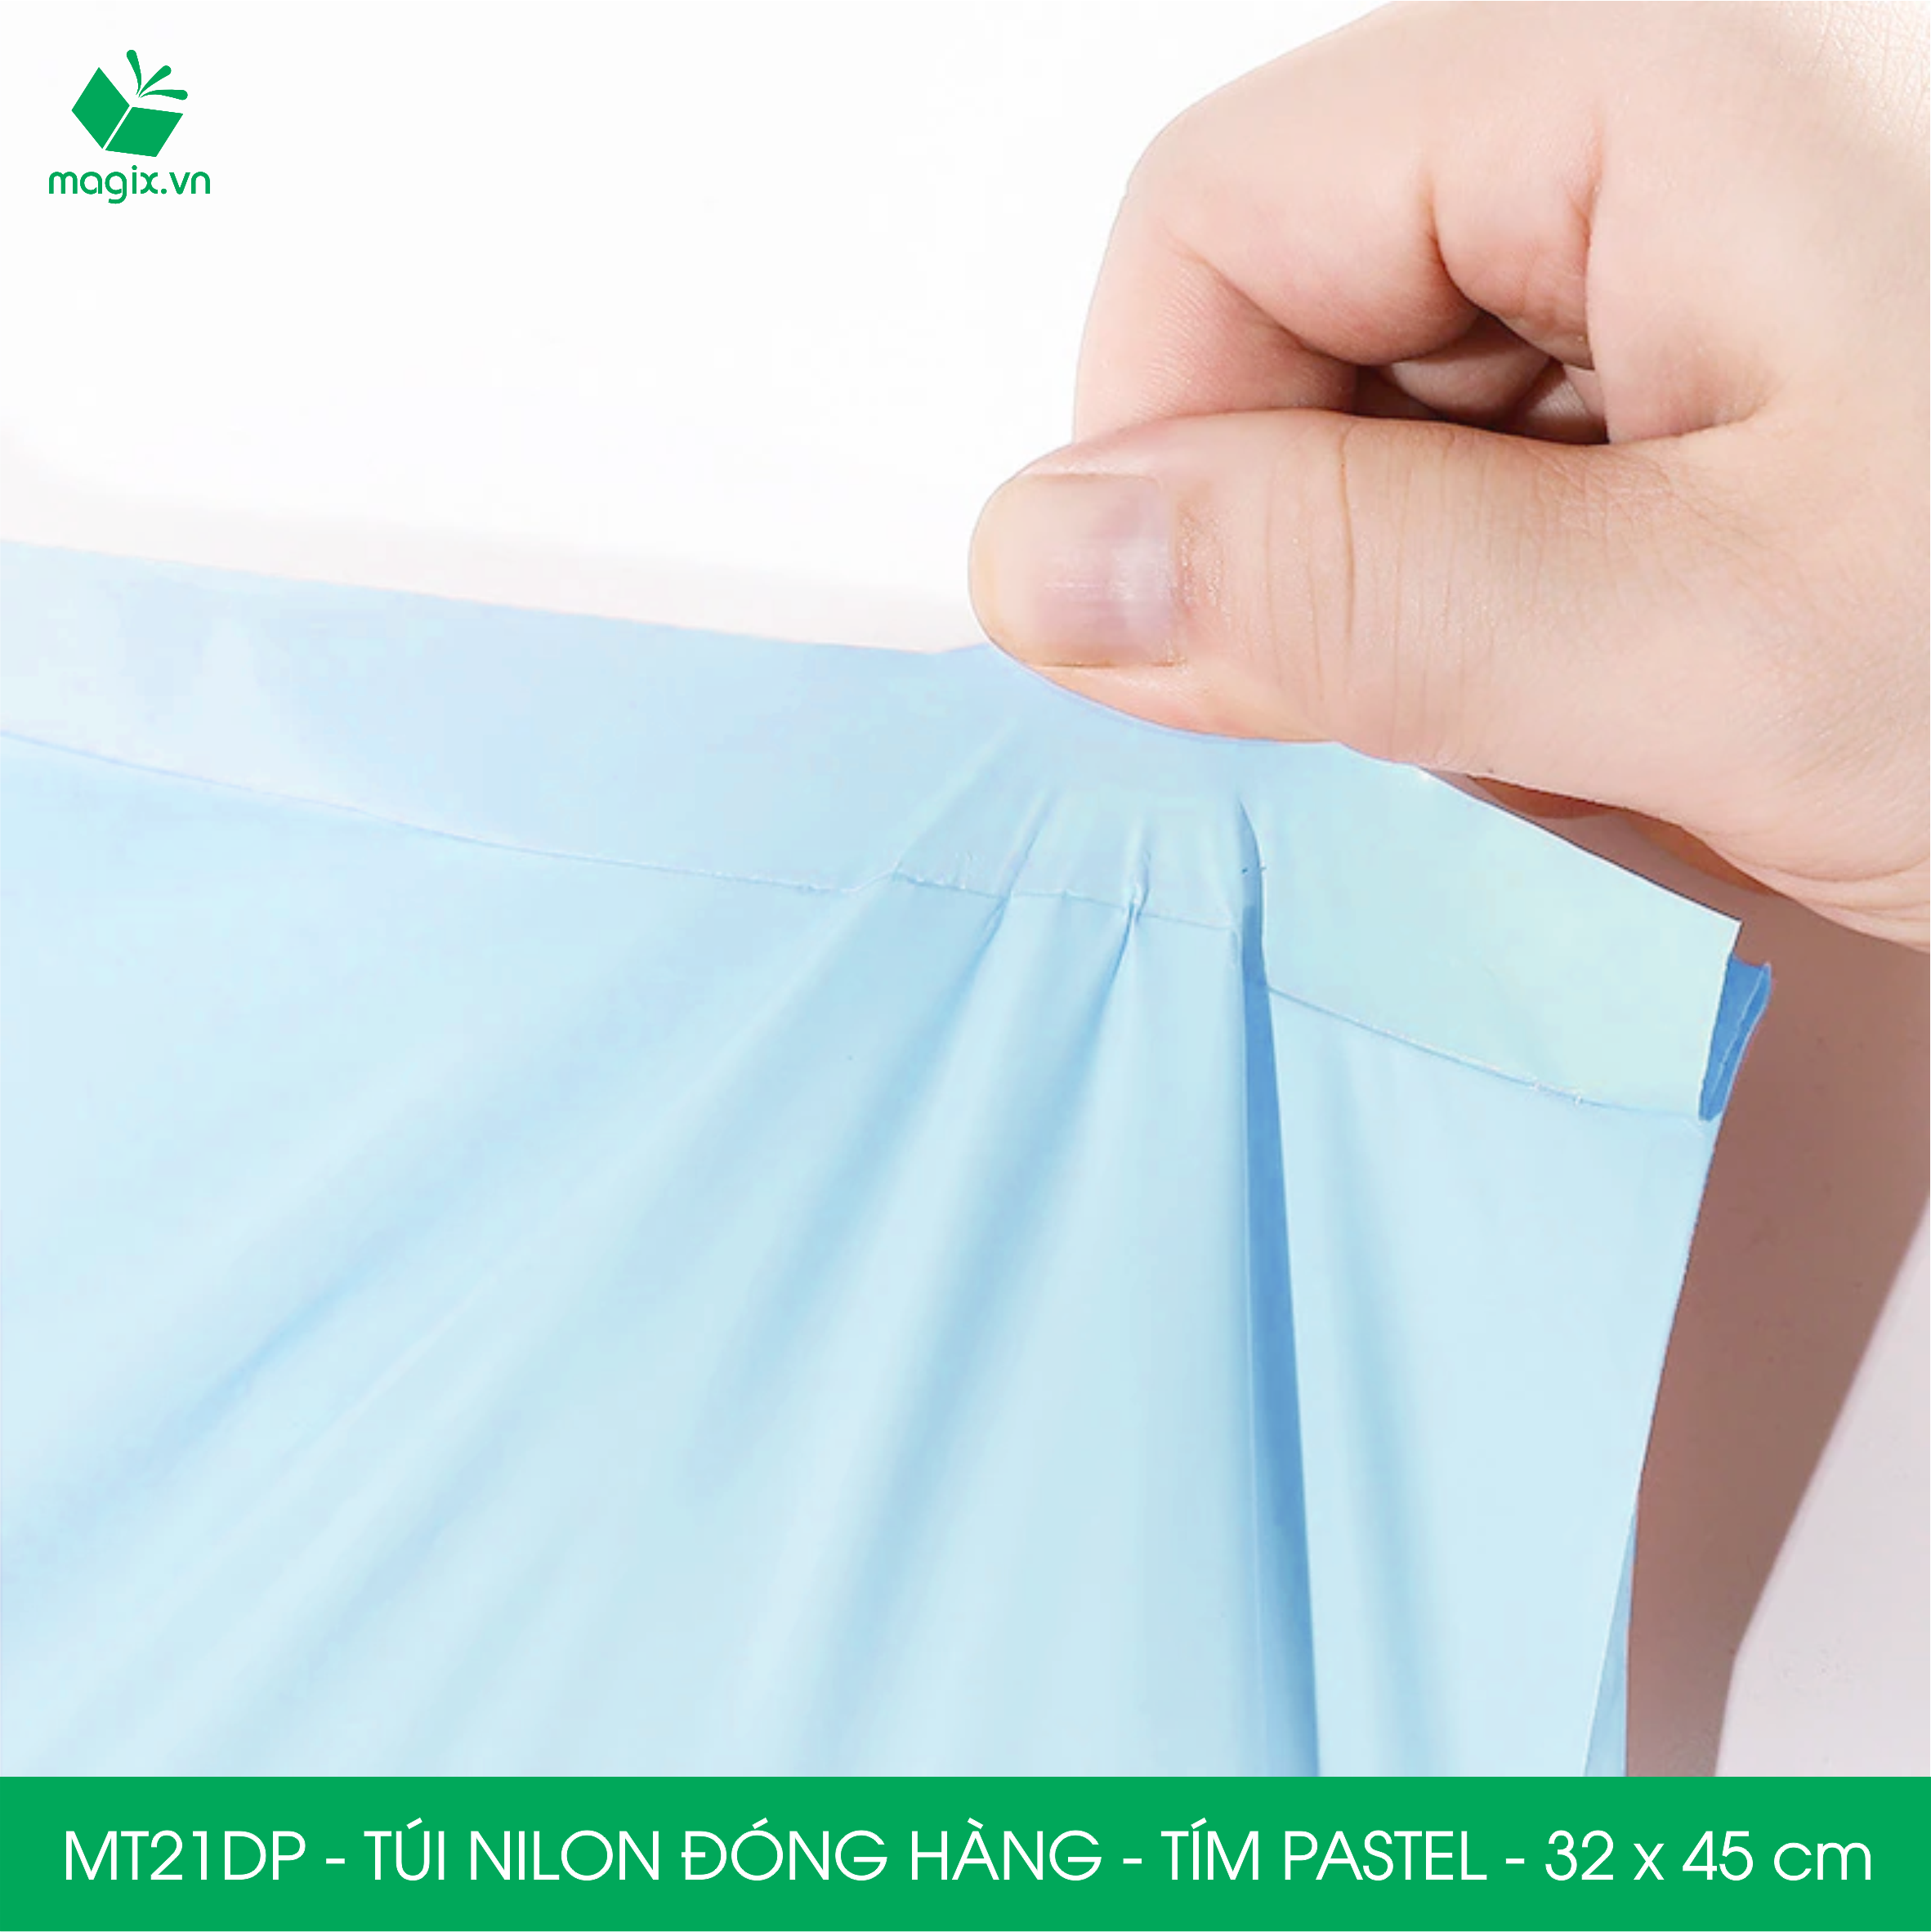 Hình ảnh MT21DP - 32x45 cm  - Túi nilon gói hàng - 200 túi niêm phong đóng hàng màu xanh pastel